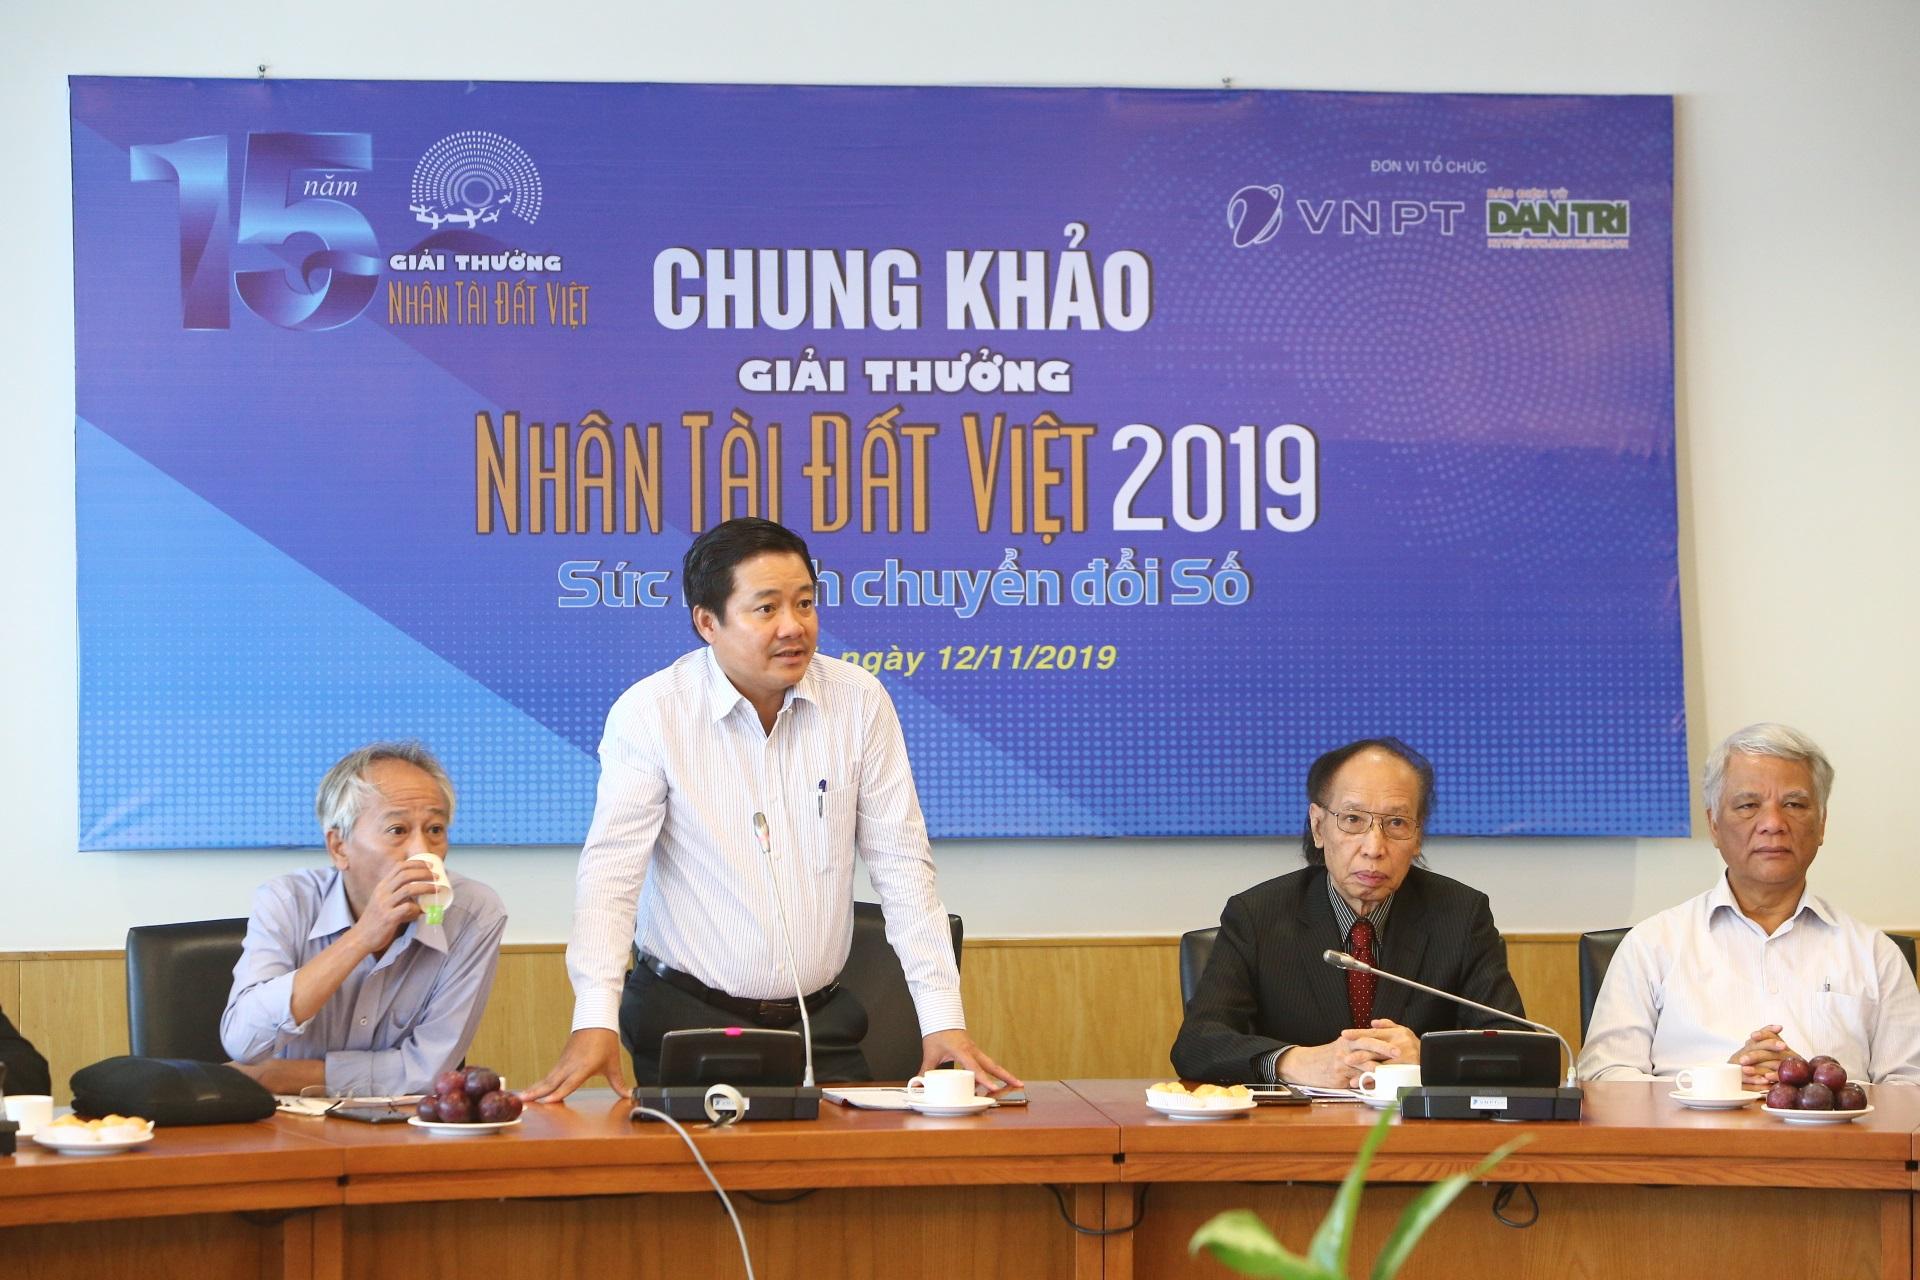 ​  Ông Huỳnh Quang Liêm - Phó Tổng giám đốc Tập đoàn VNPT, Chủ tịch Tổng công ty VNPT-Media, đồng Trưởng ban tổ chức Giải thưởng Nhân tài Đất Việt 2019 phát biểu.  ​